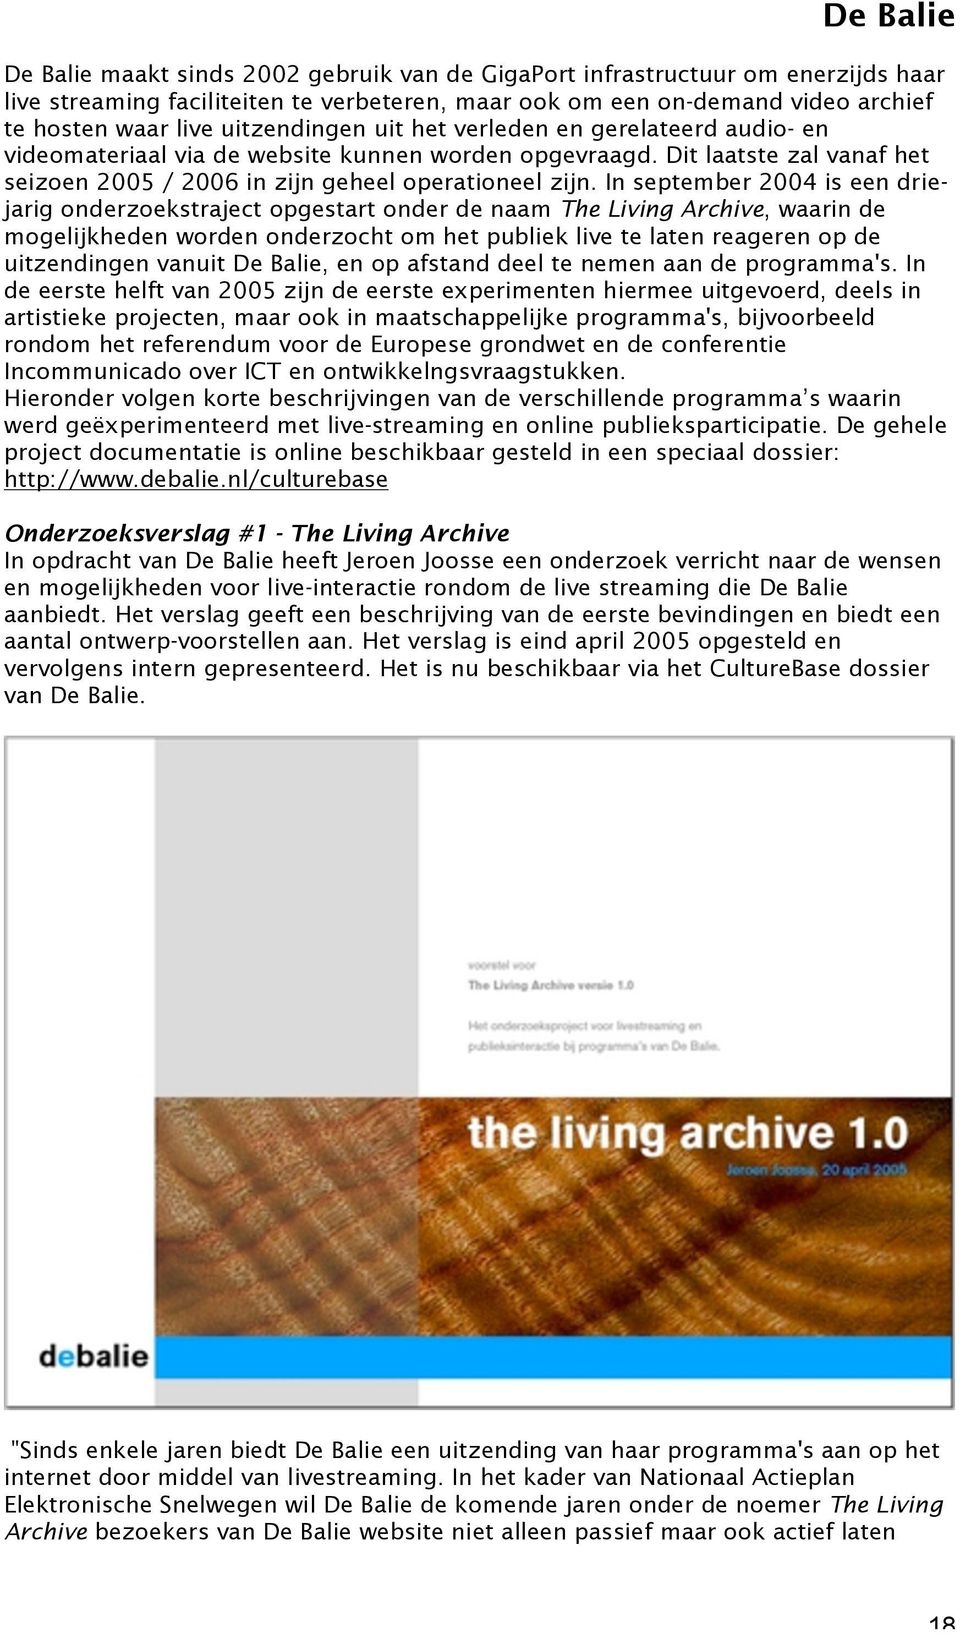 In september 2004 is een driejarig onderzoekstraject opgestart onder de naam The Living Archive, waarin de mogelijkheden worden onderzocht om het publiek live te laten reageren op de uitzendingen